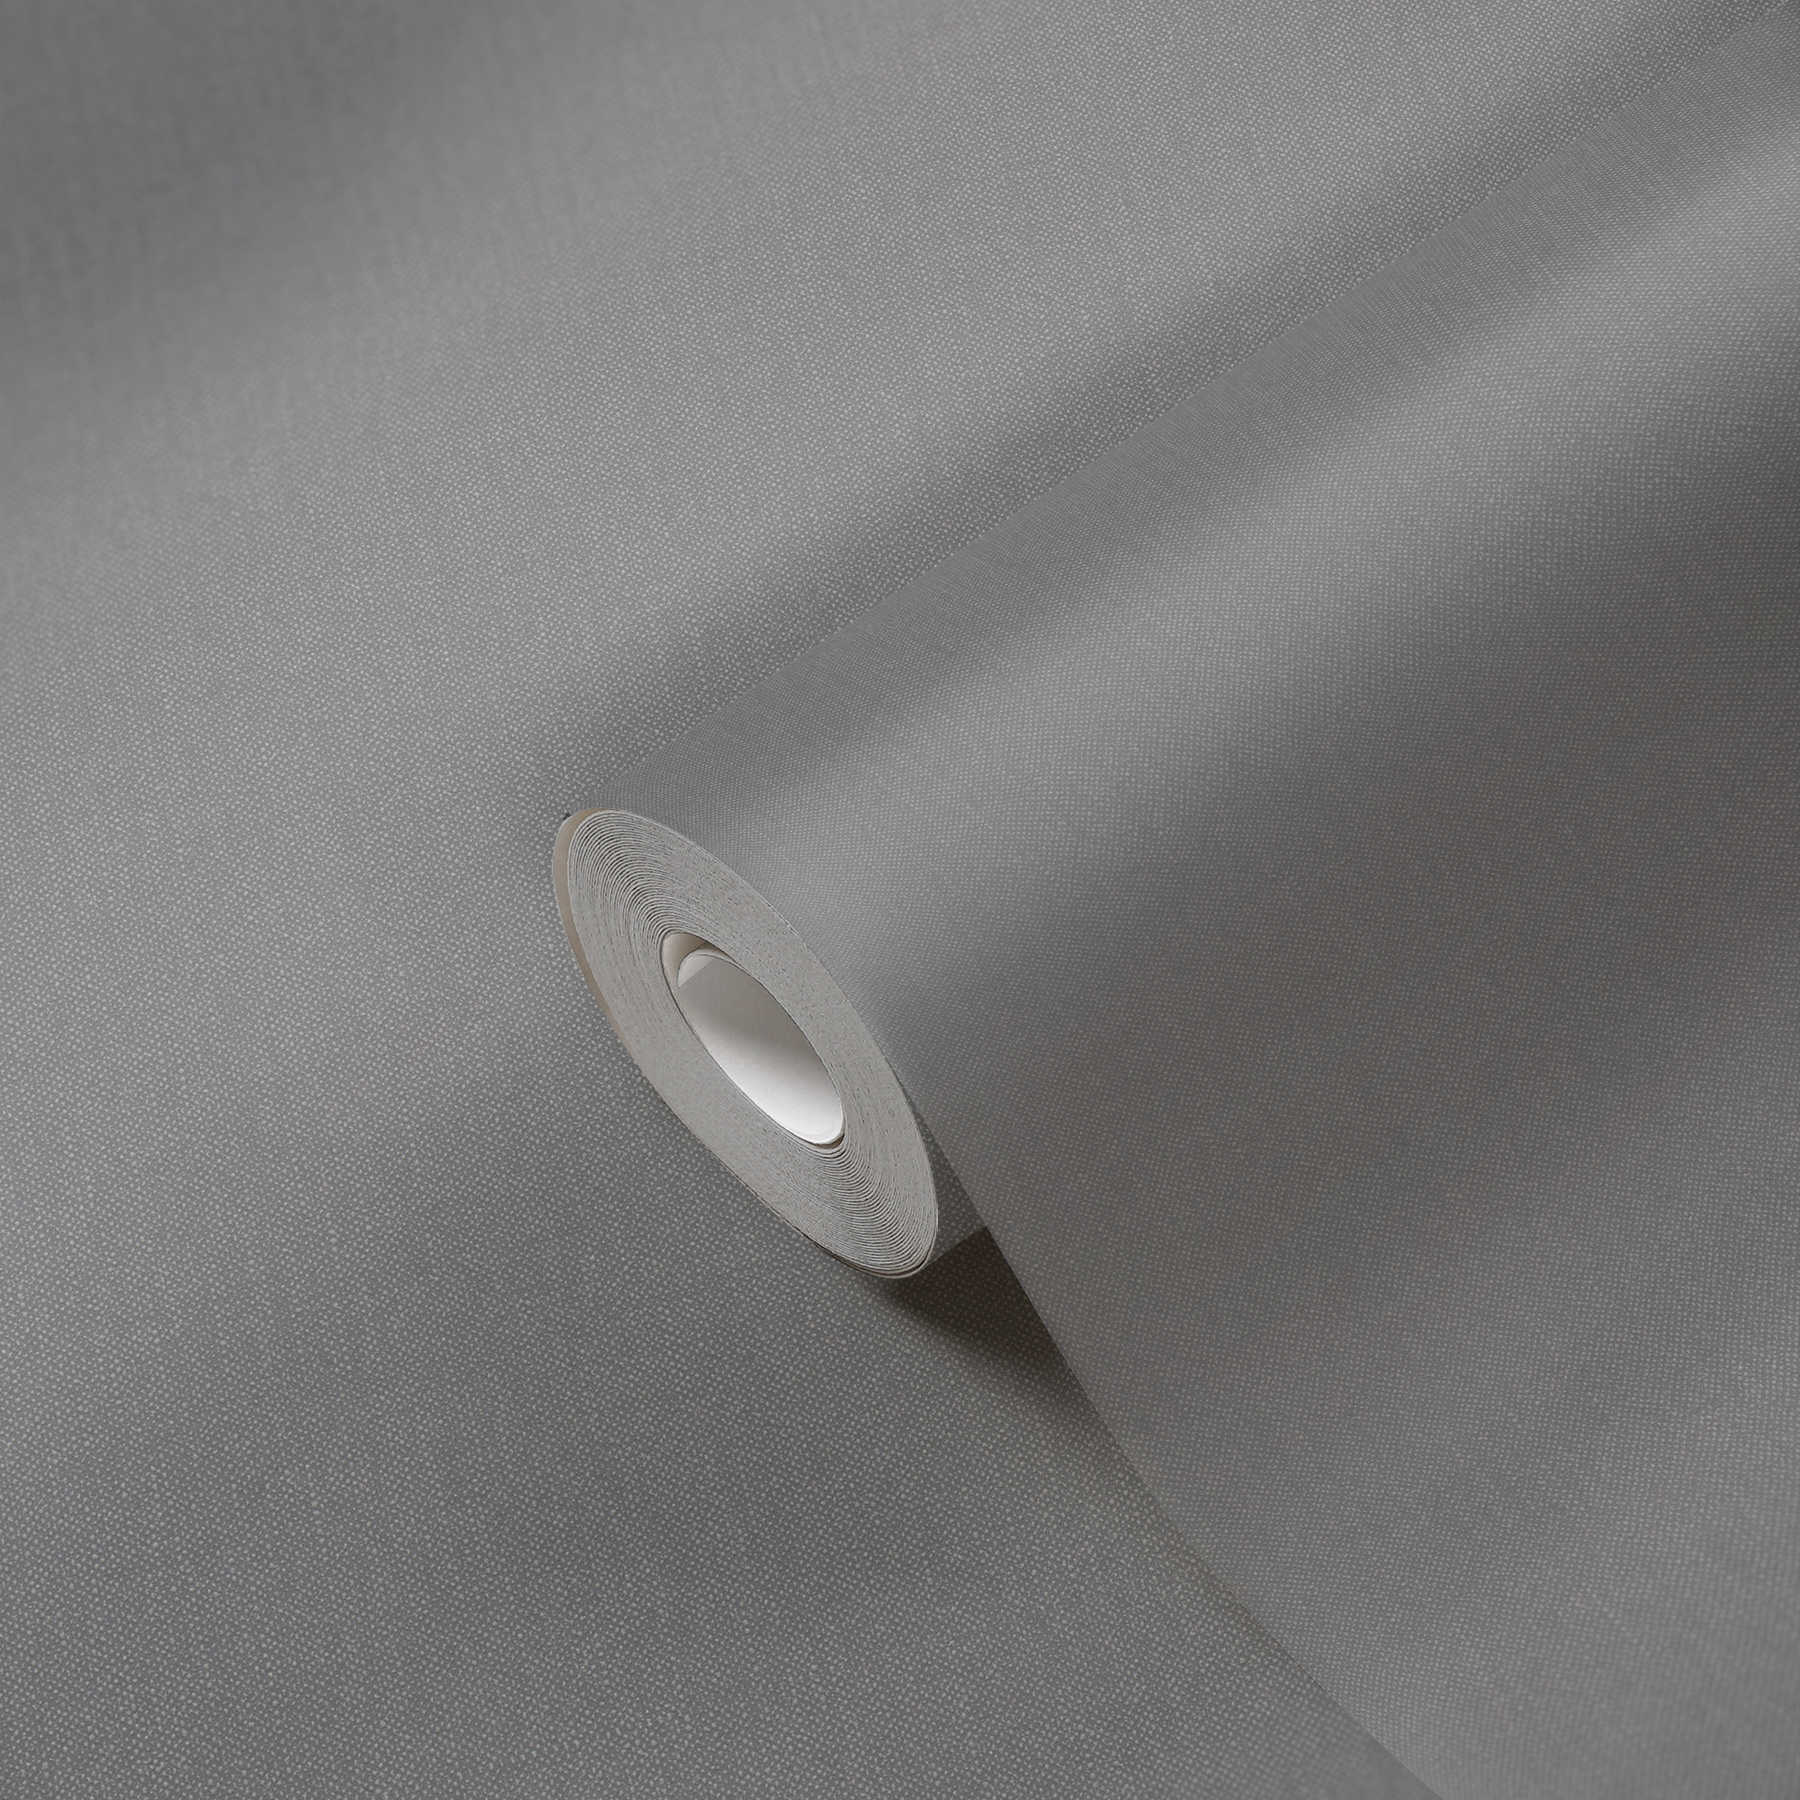             Leinenoptik Tapete mit Strukturmuster in elegantem Grau
        